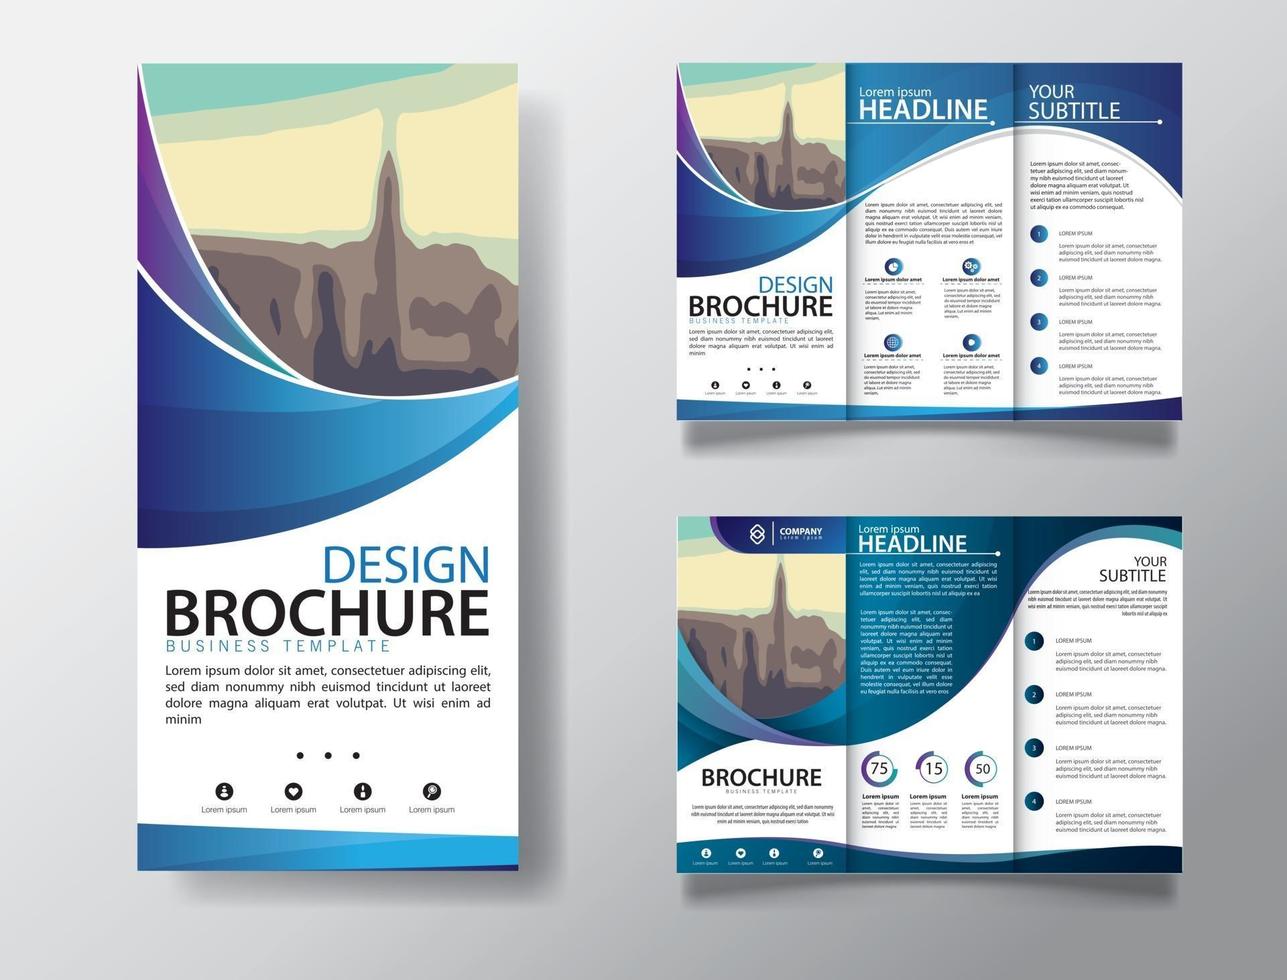 modèle de brochure à trois volets pour le marketing promotionnel vecteur